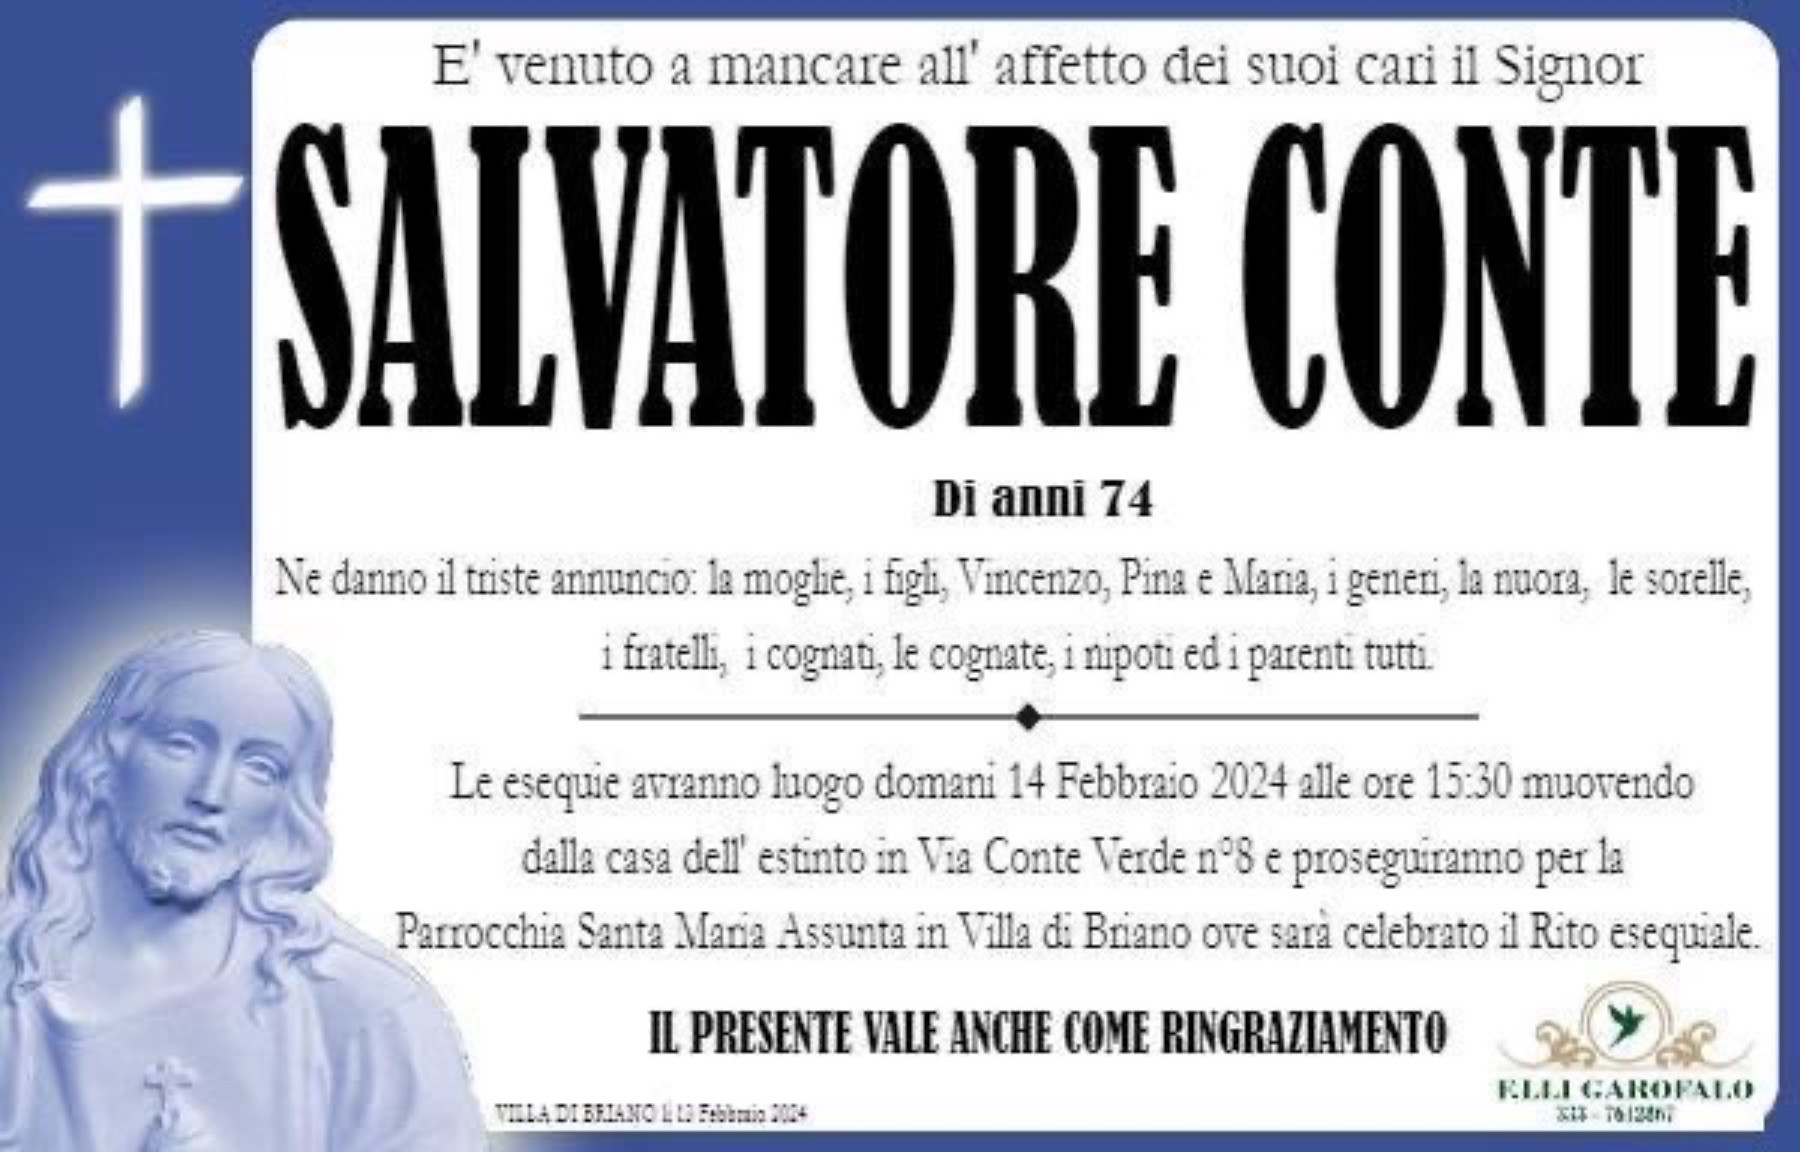 Salvatore Conte